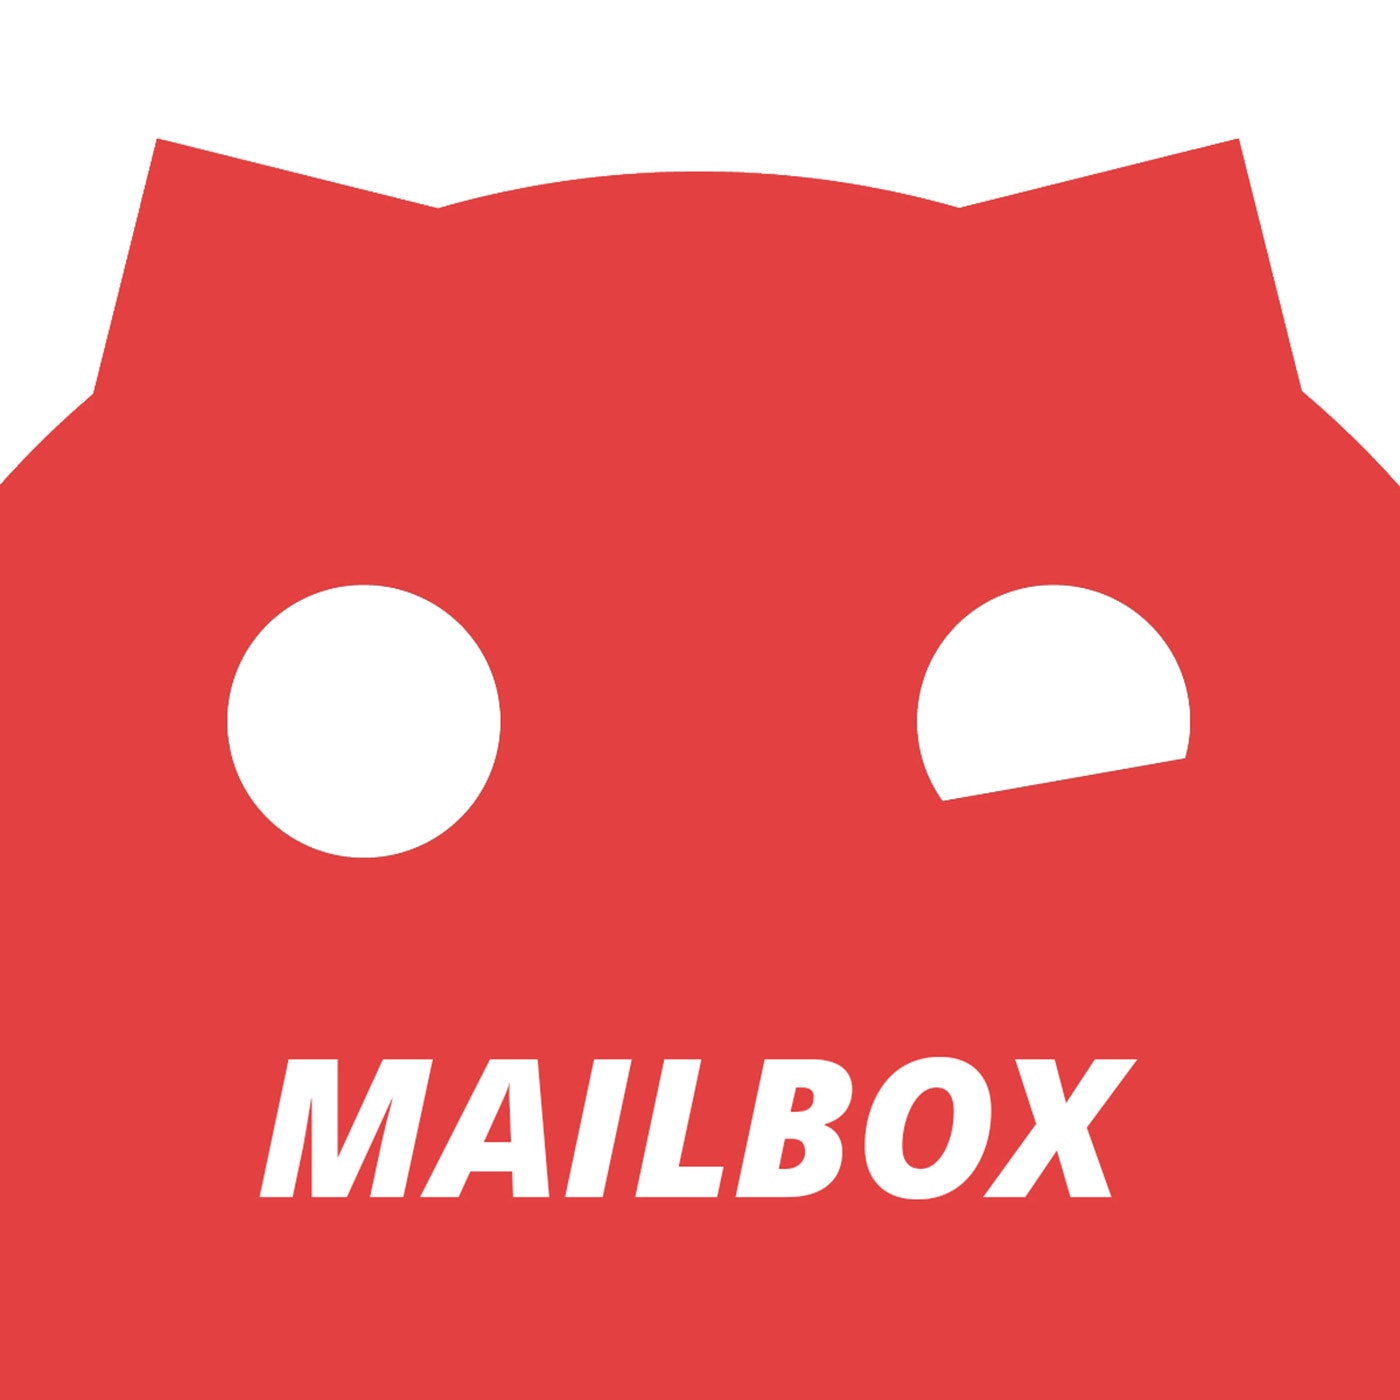 MDR SPUTNIK Mailbox logo